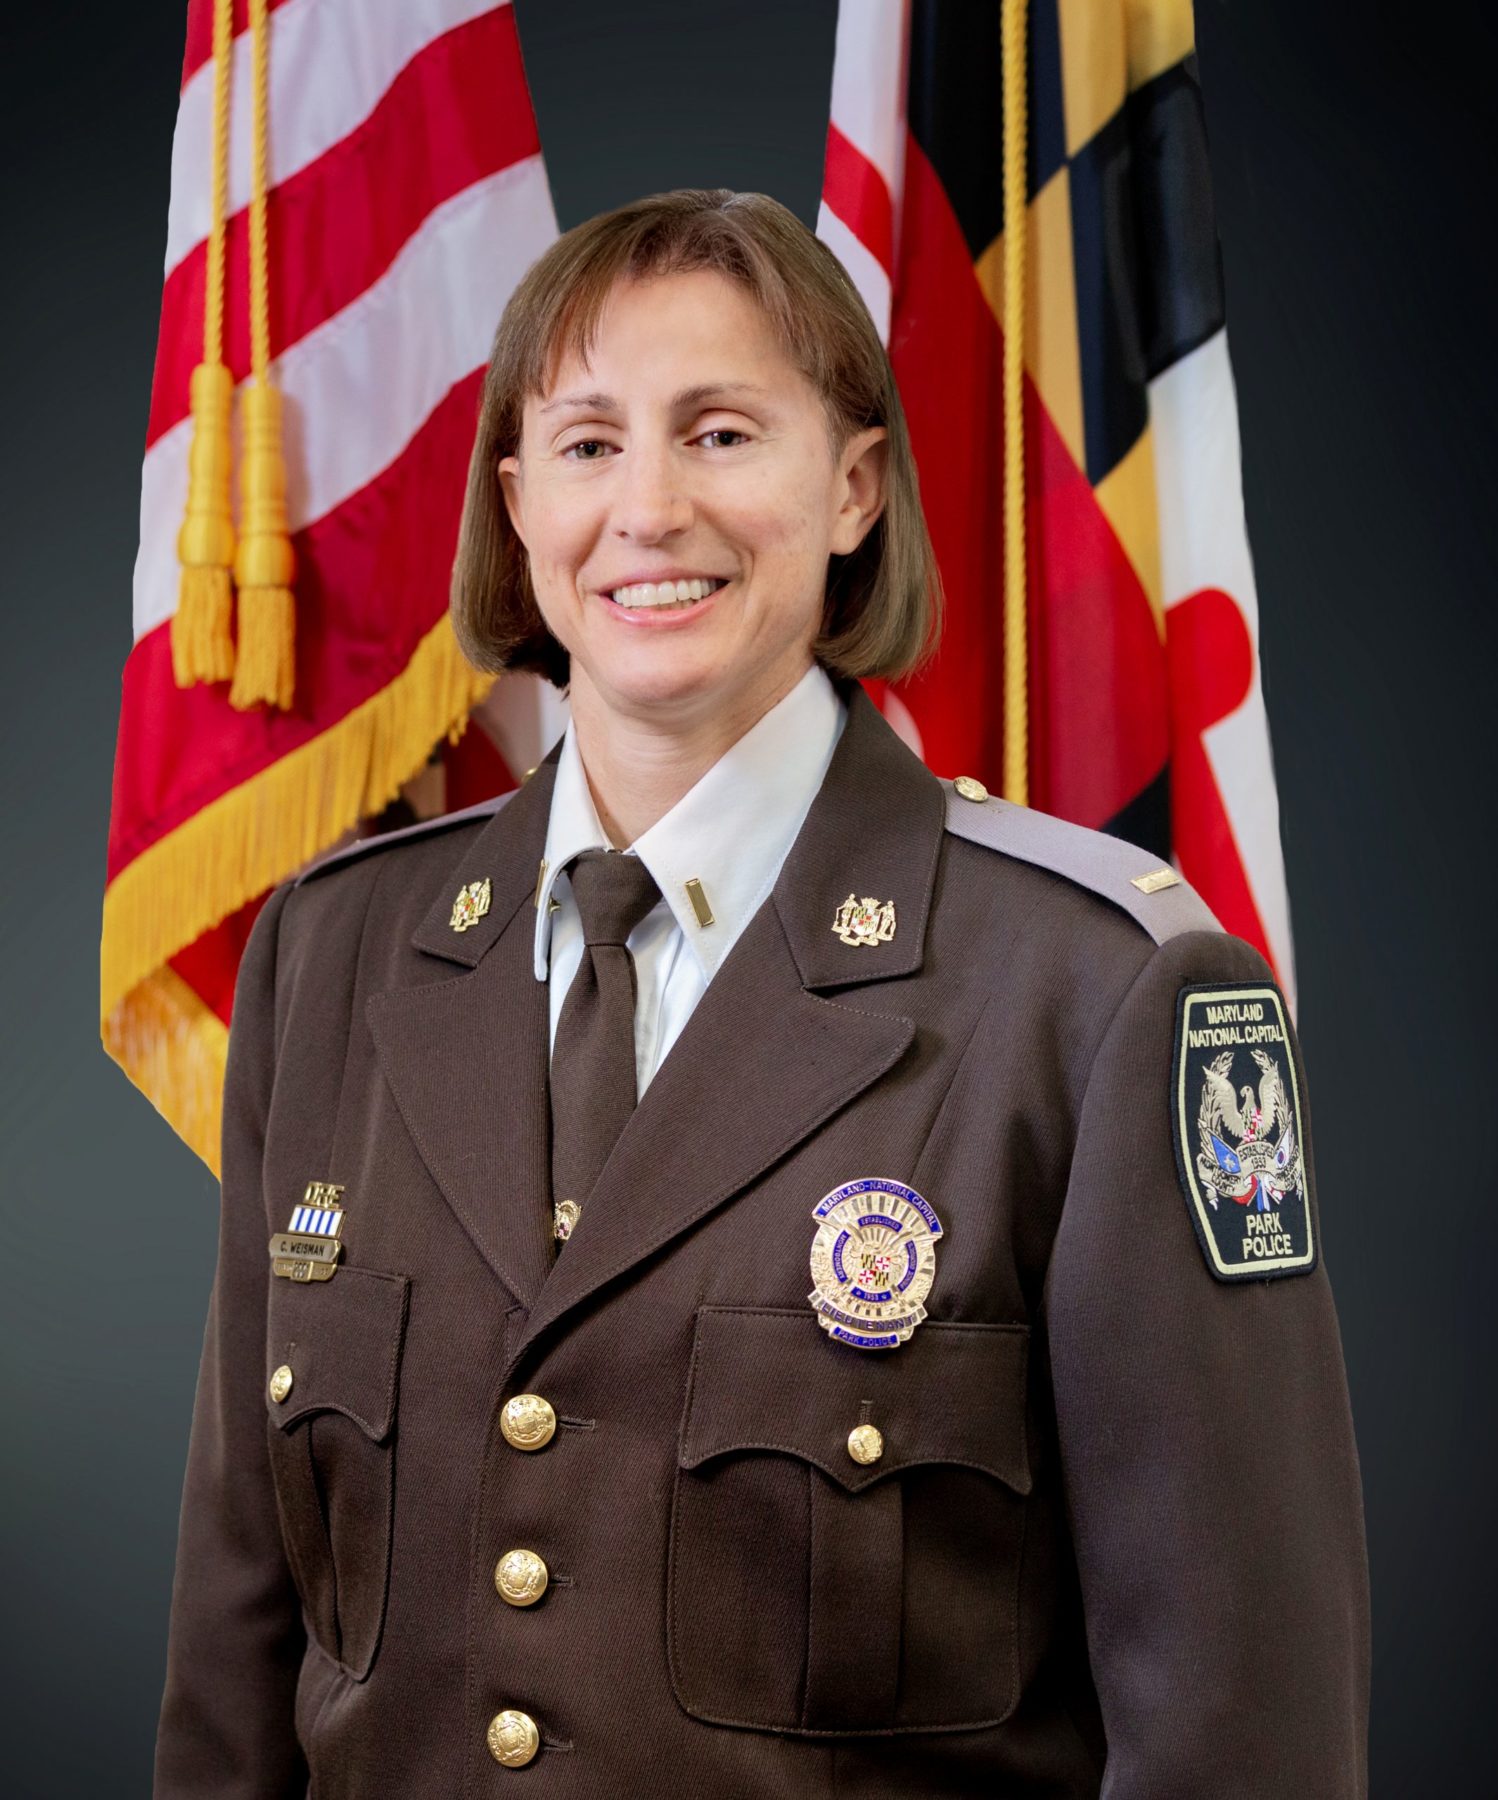 Lt. Cindy Weisman